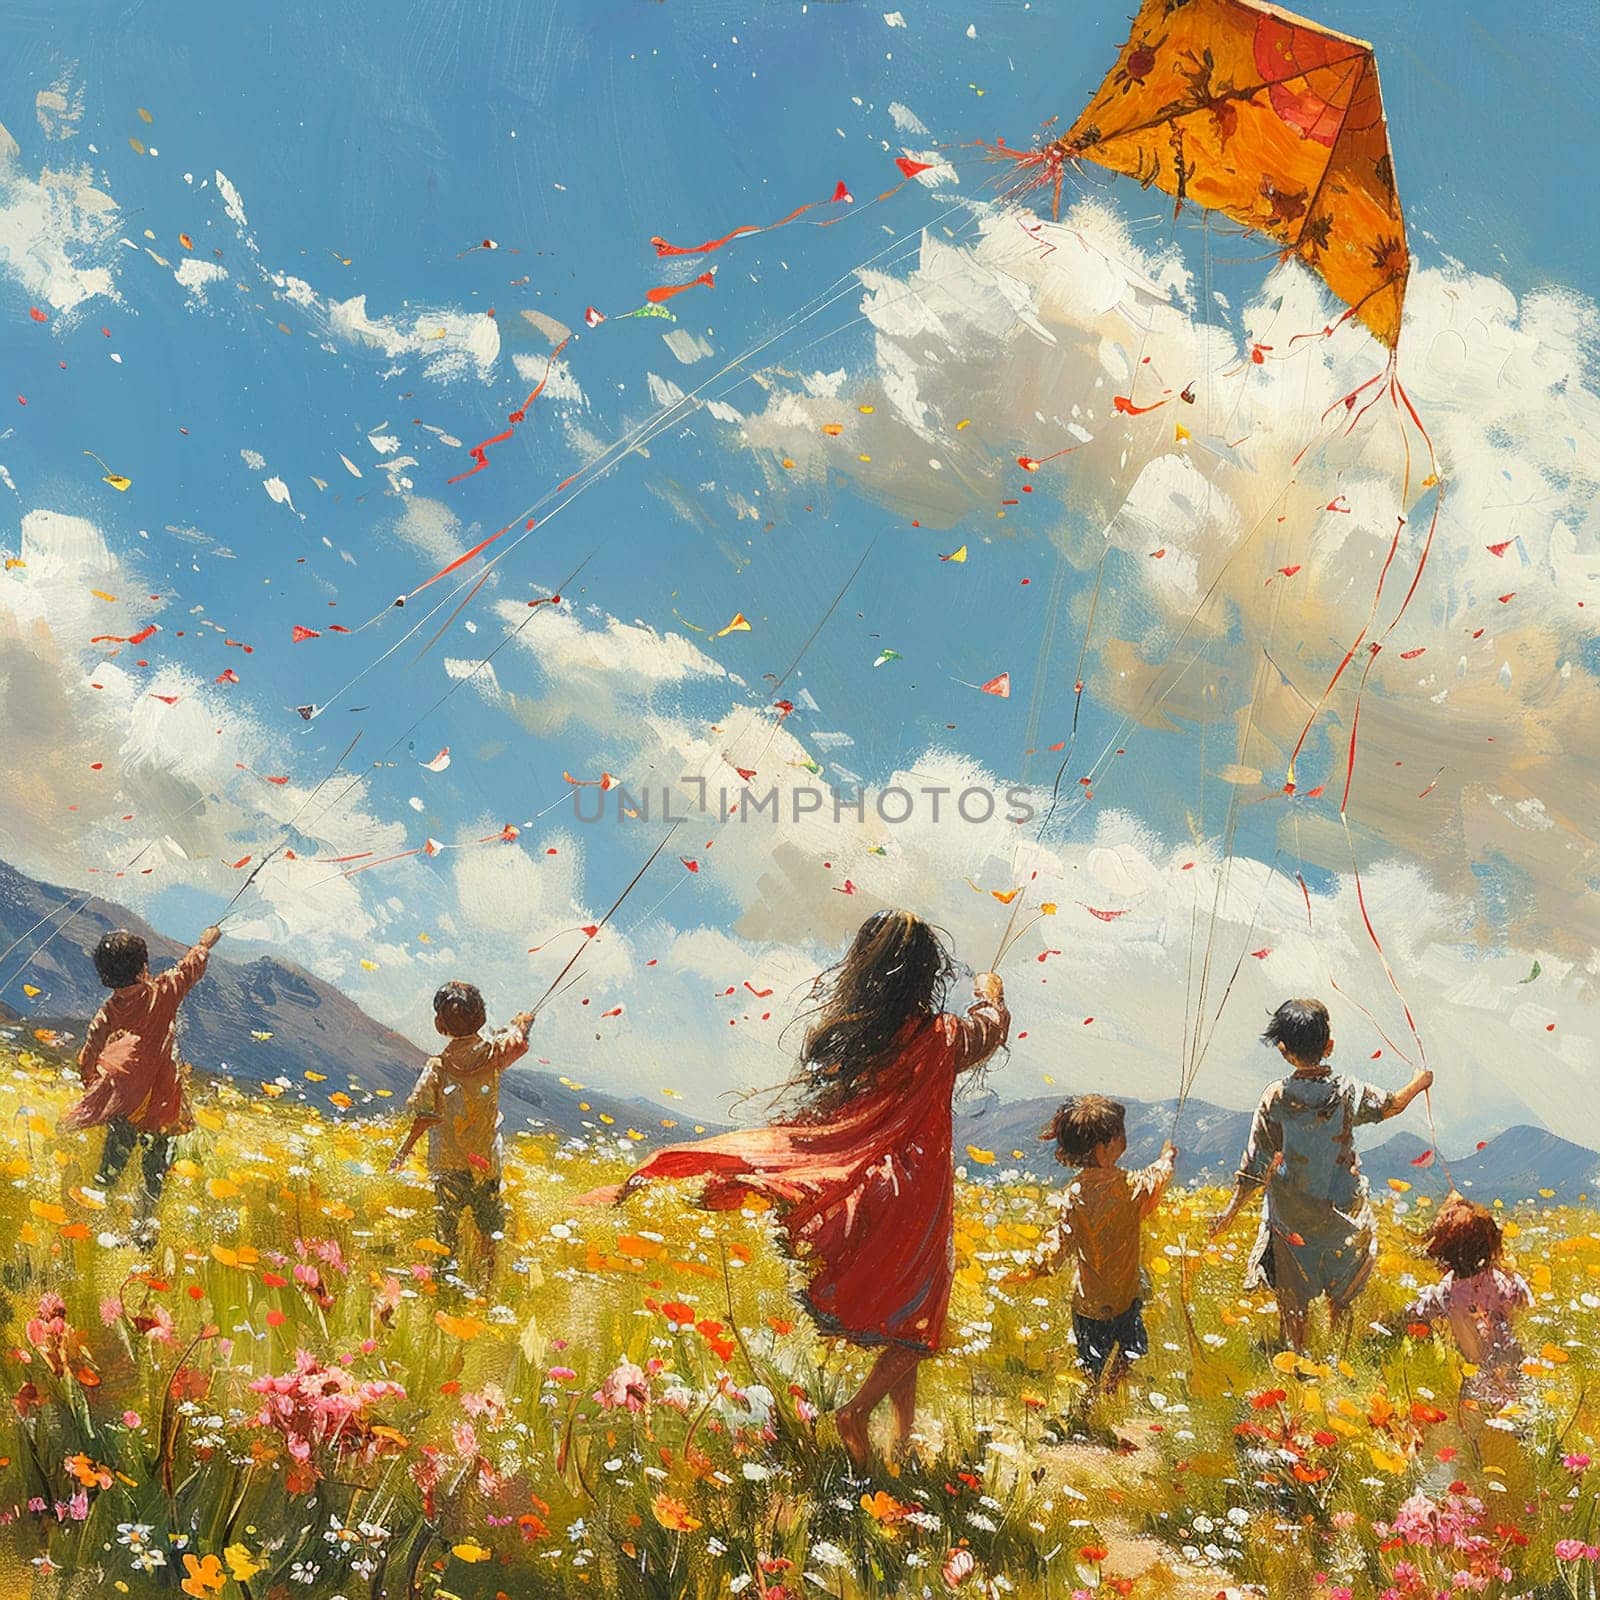 Scene of children flying kites in field of blooming flowers for Pakistani Spring Festival